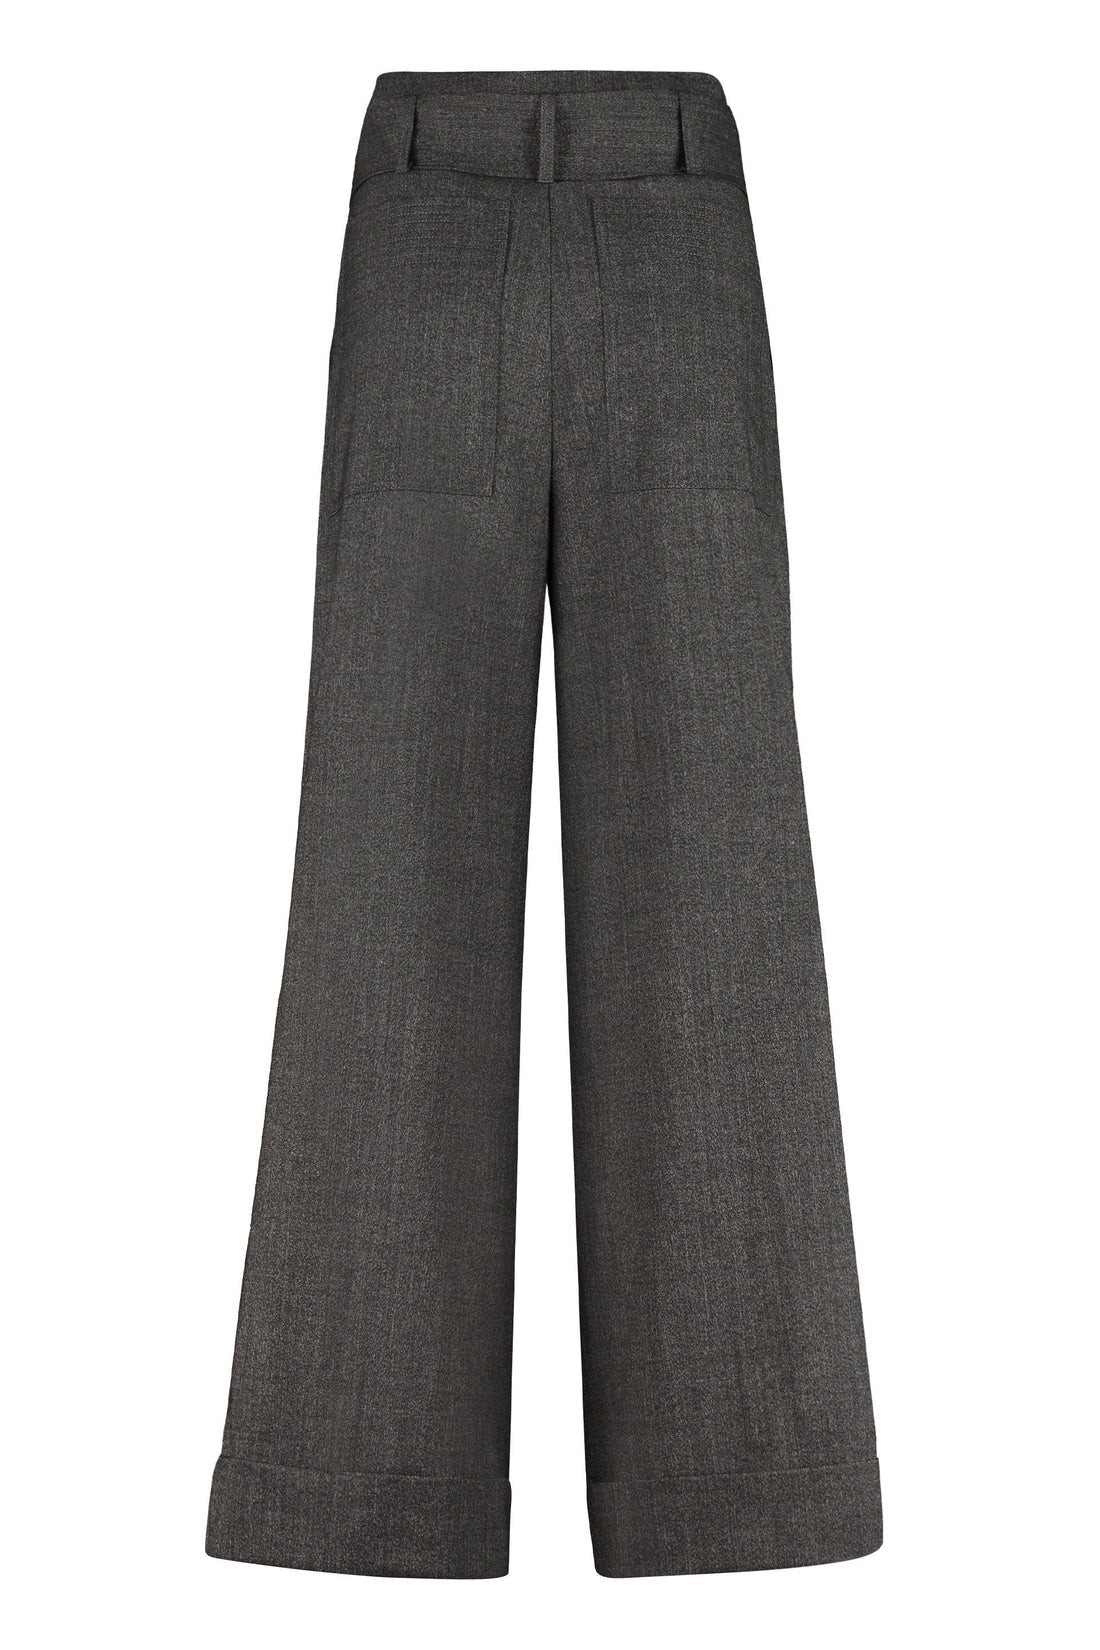 Parosh-OUTLET-SALE-Plane wool blend trousers-ARCHIVIST